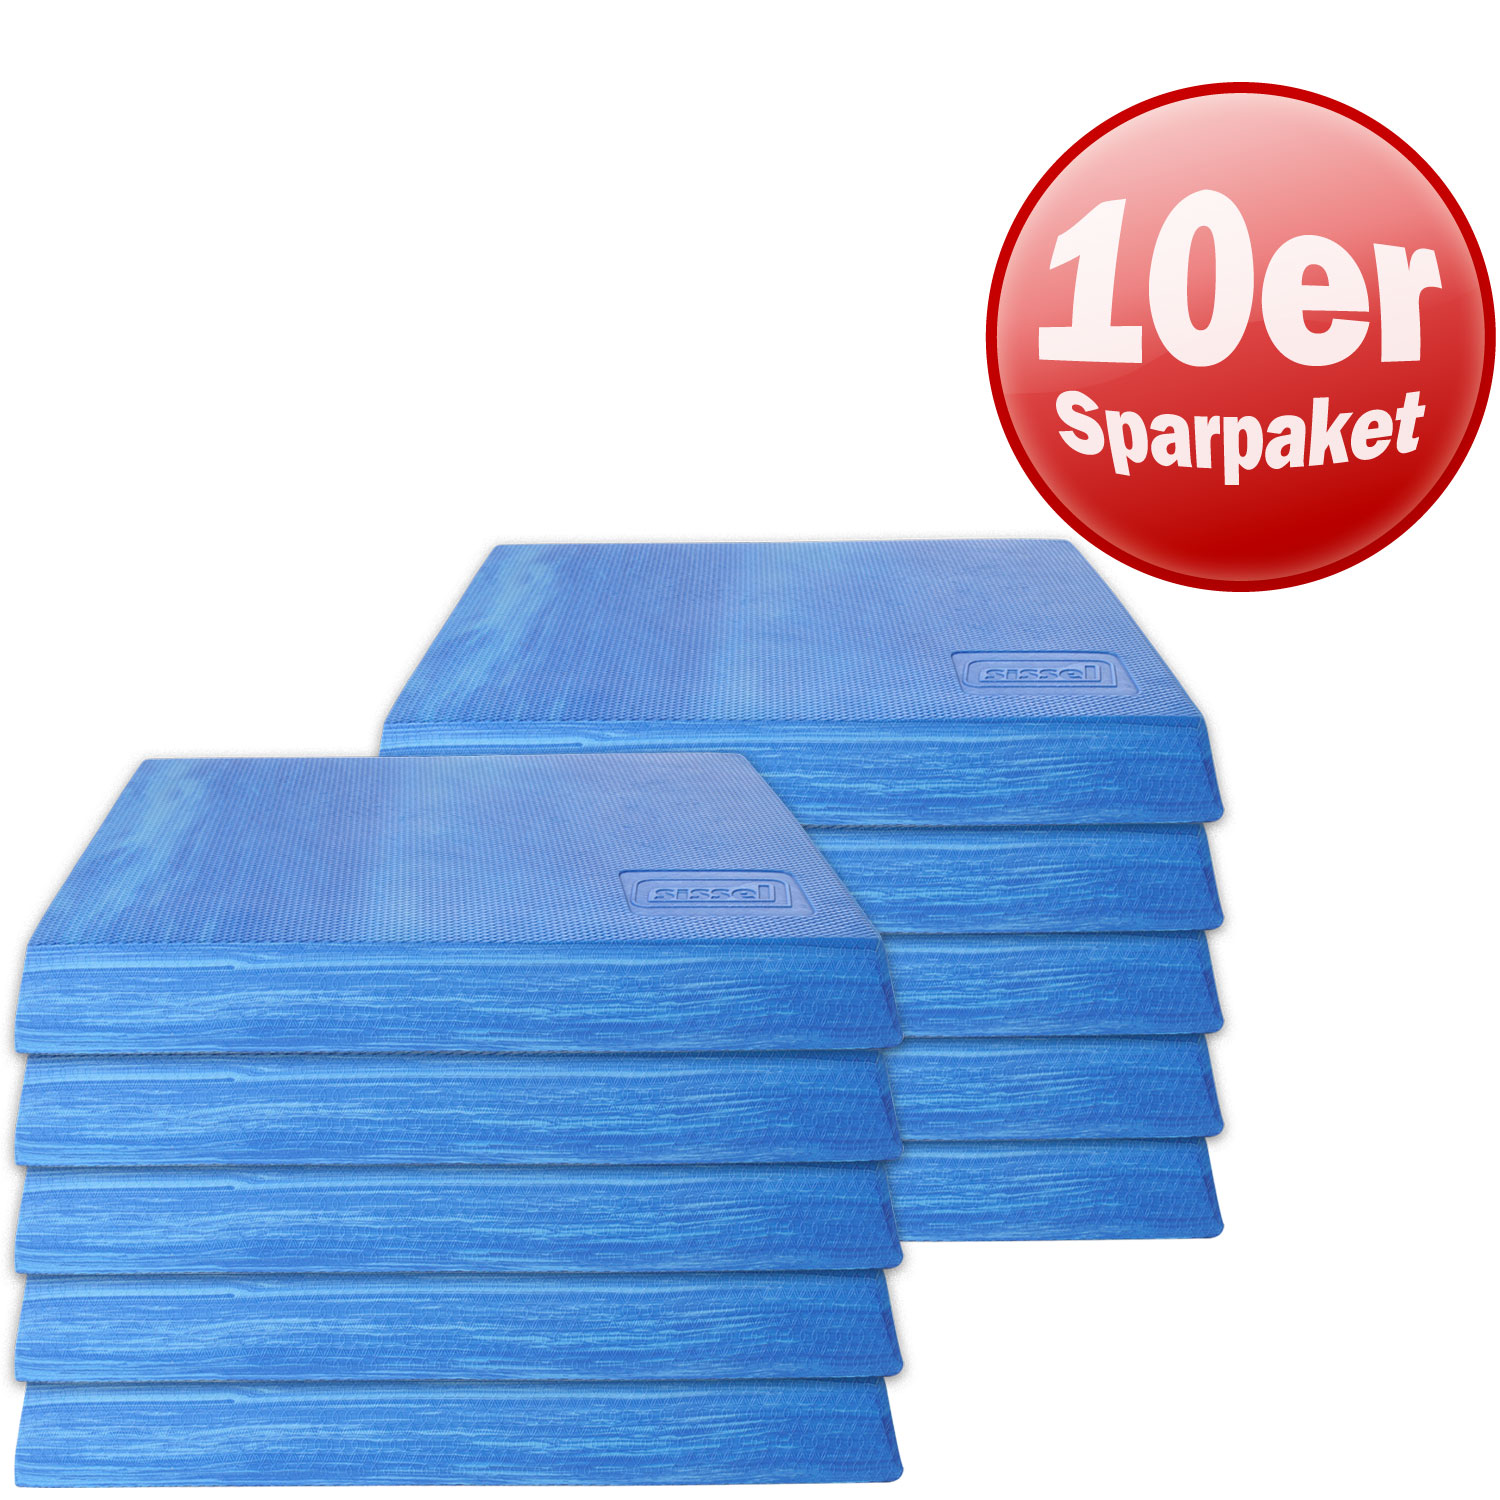 Sissel® Balancefit Pad, 10er Pack